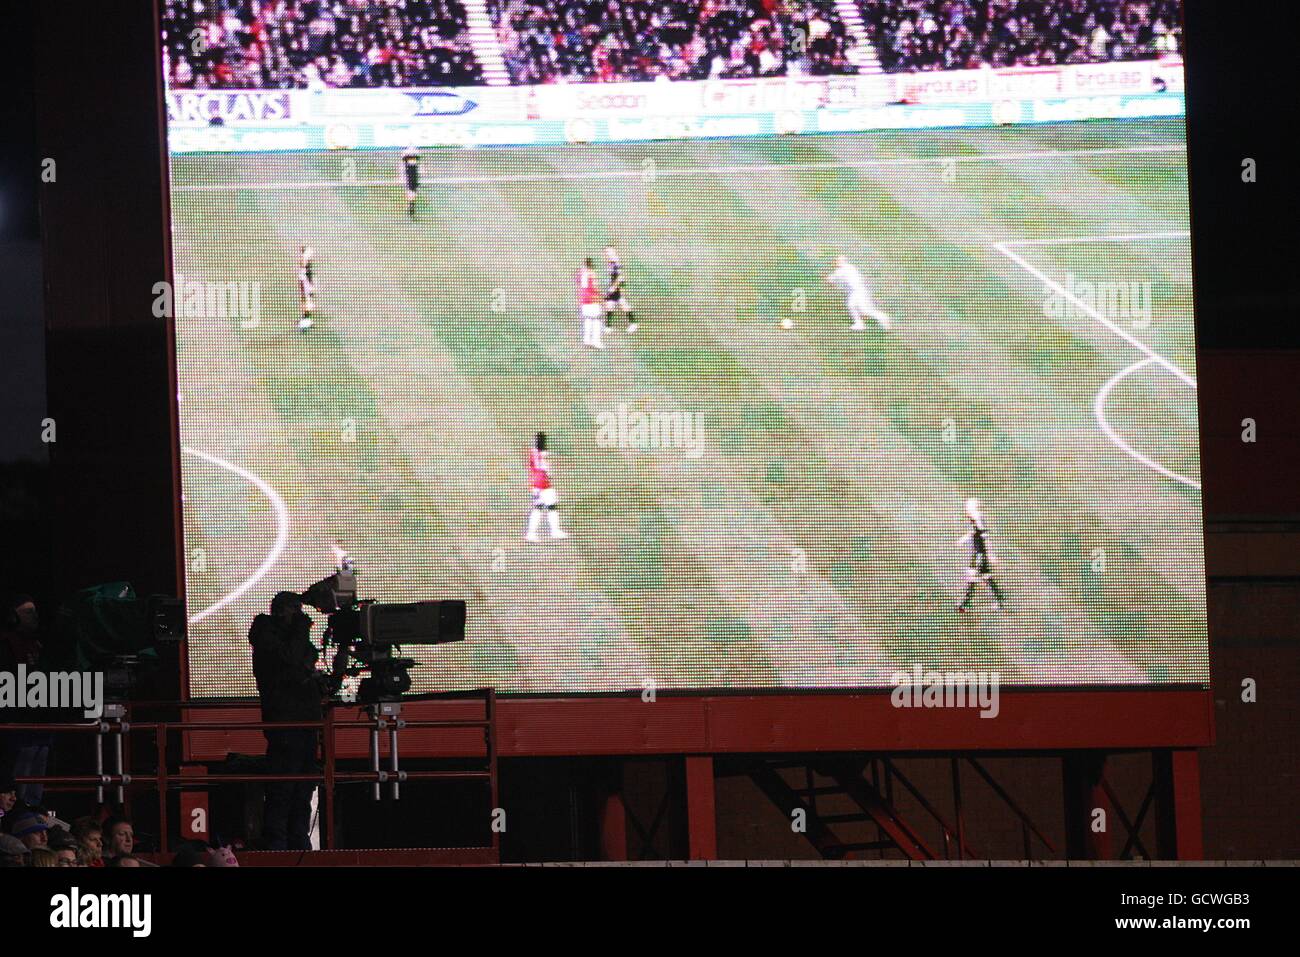 Fußball - Barclays Premier League - Stoke City / Liverpool - Britannia Stadium. Gesamtansicht einer Fernsehkamera, die das Geschehen vor dem riesigen Bildschirm einfängt und Matchbilder anzeigt Stockfoto